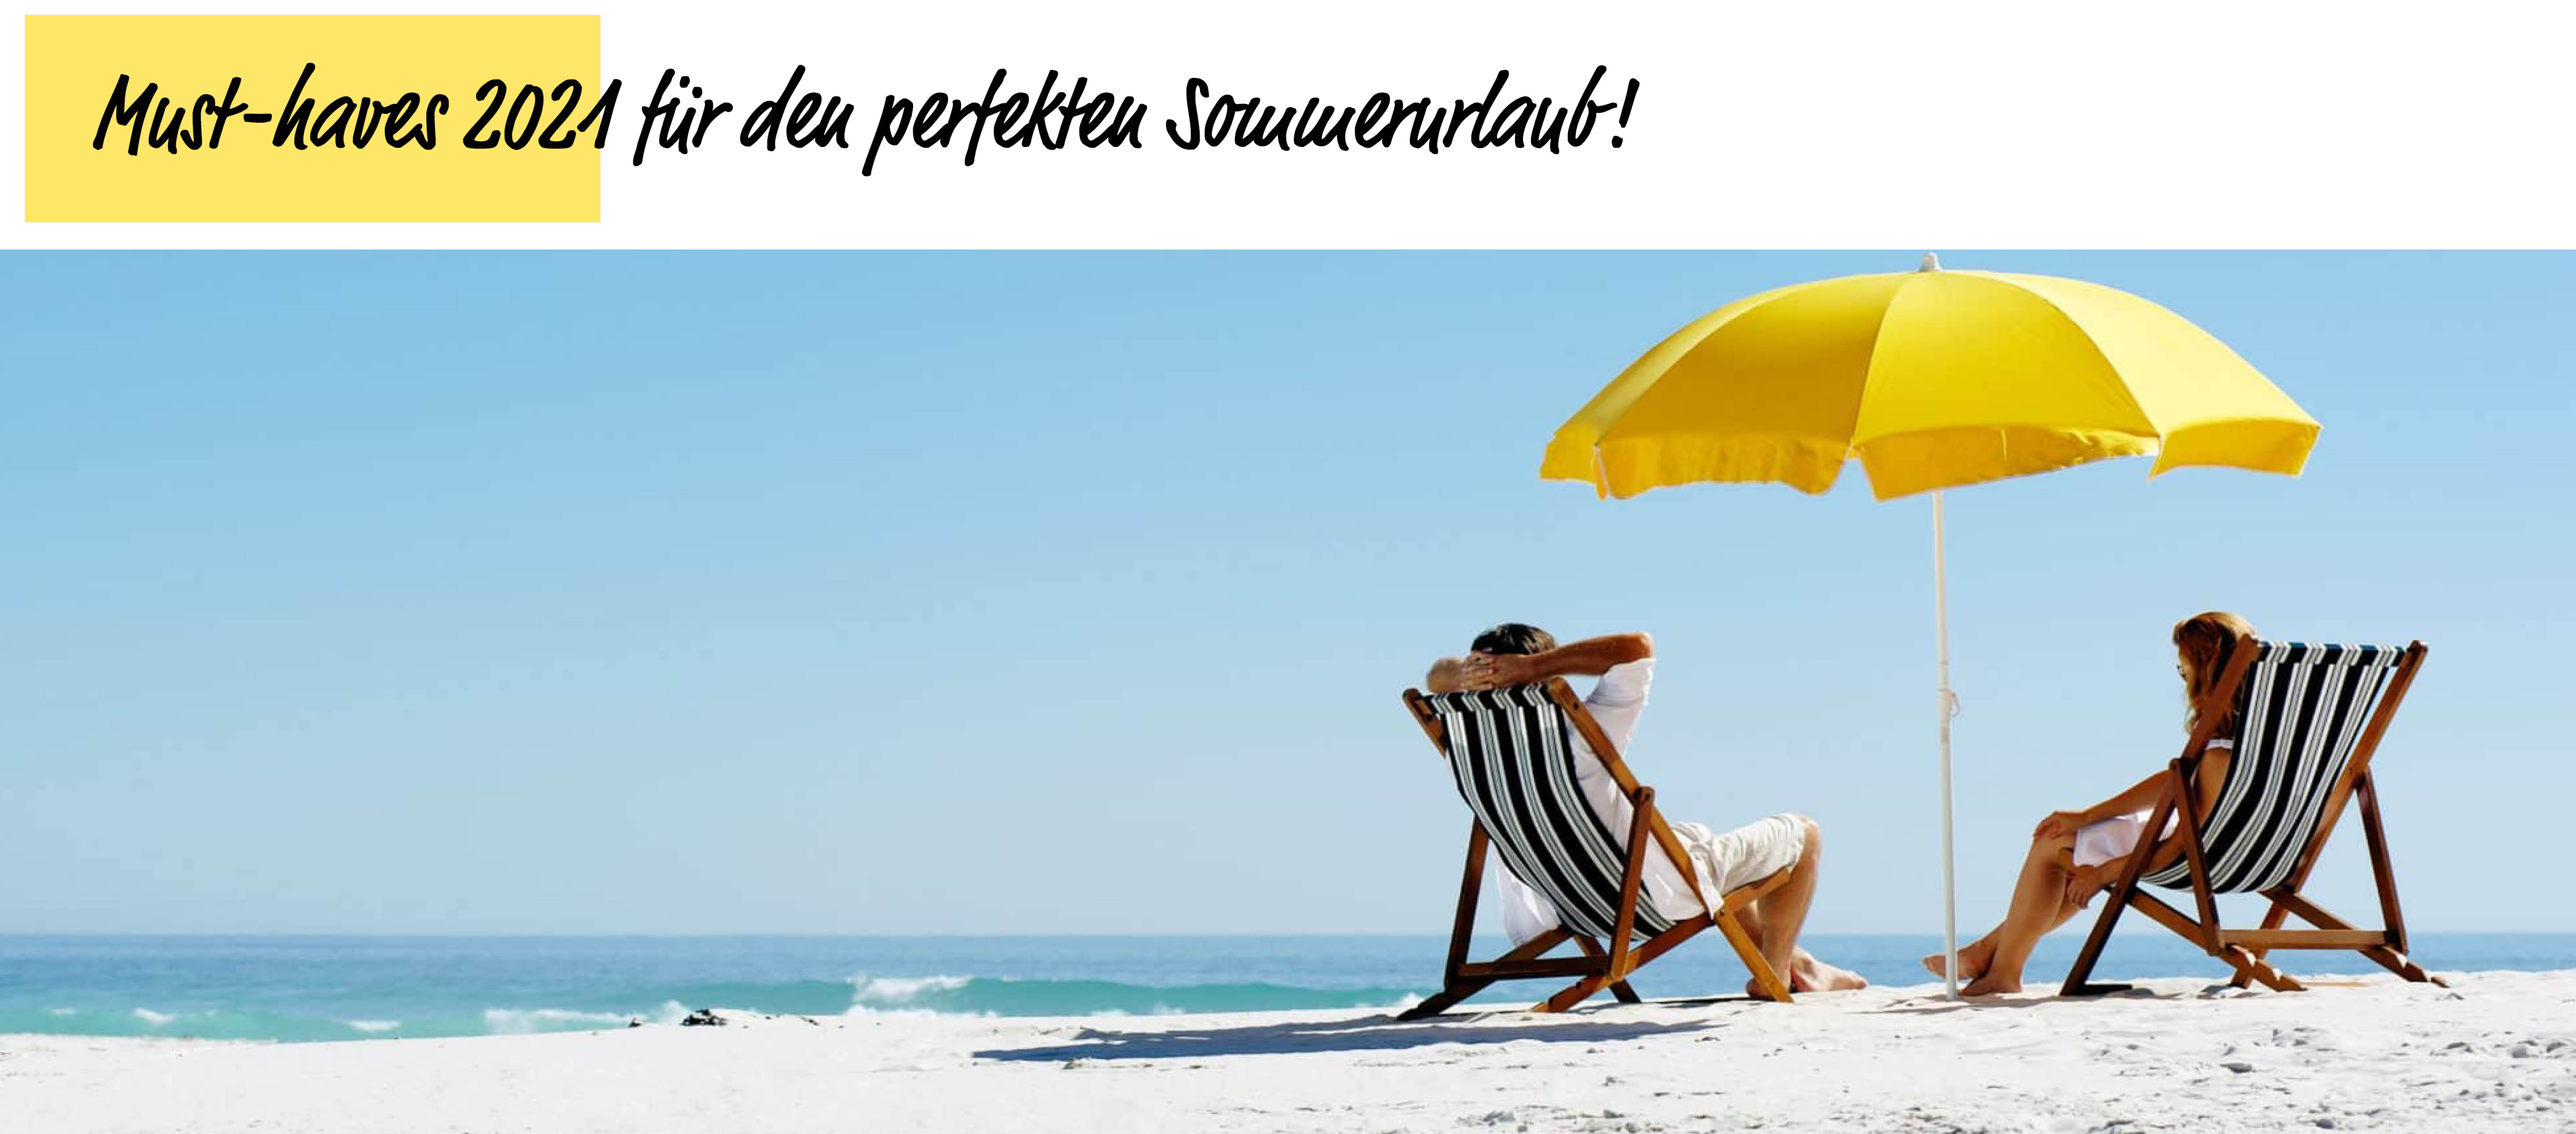 Must-haves 2021 für den perfekten Sommerurlaub! - Globus Mode, Bozen, Meran, Brixen